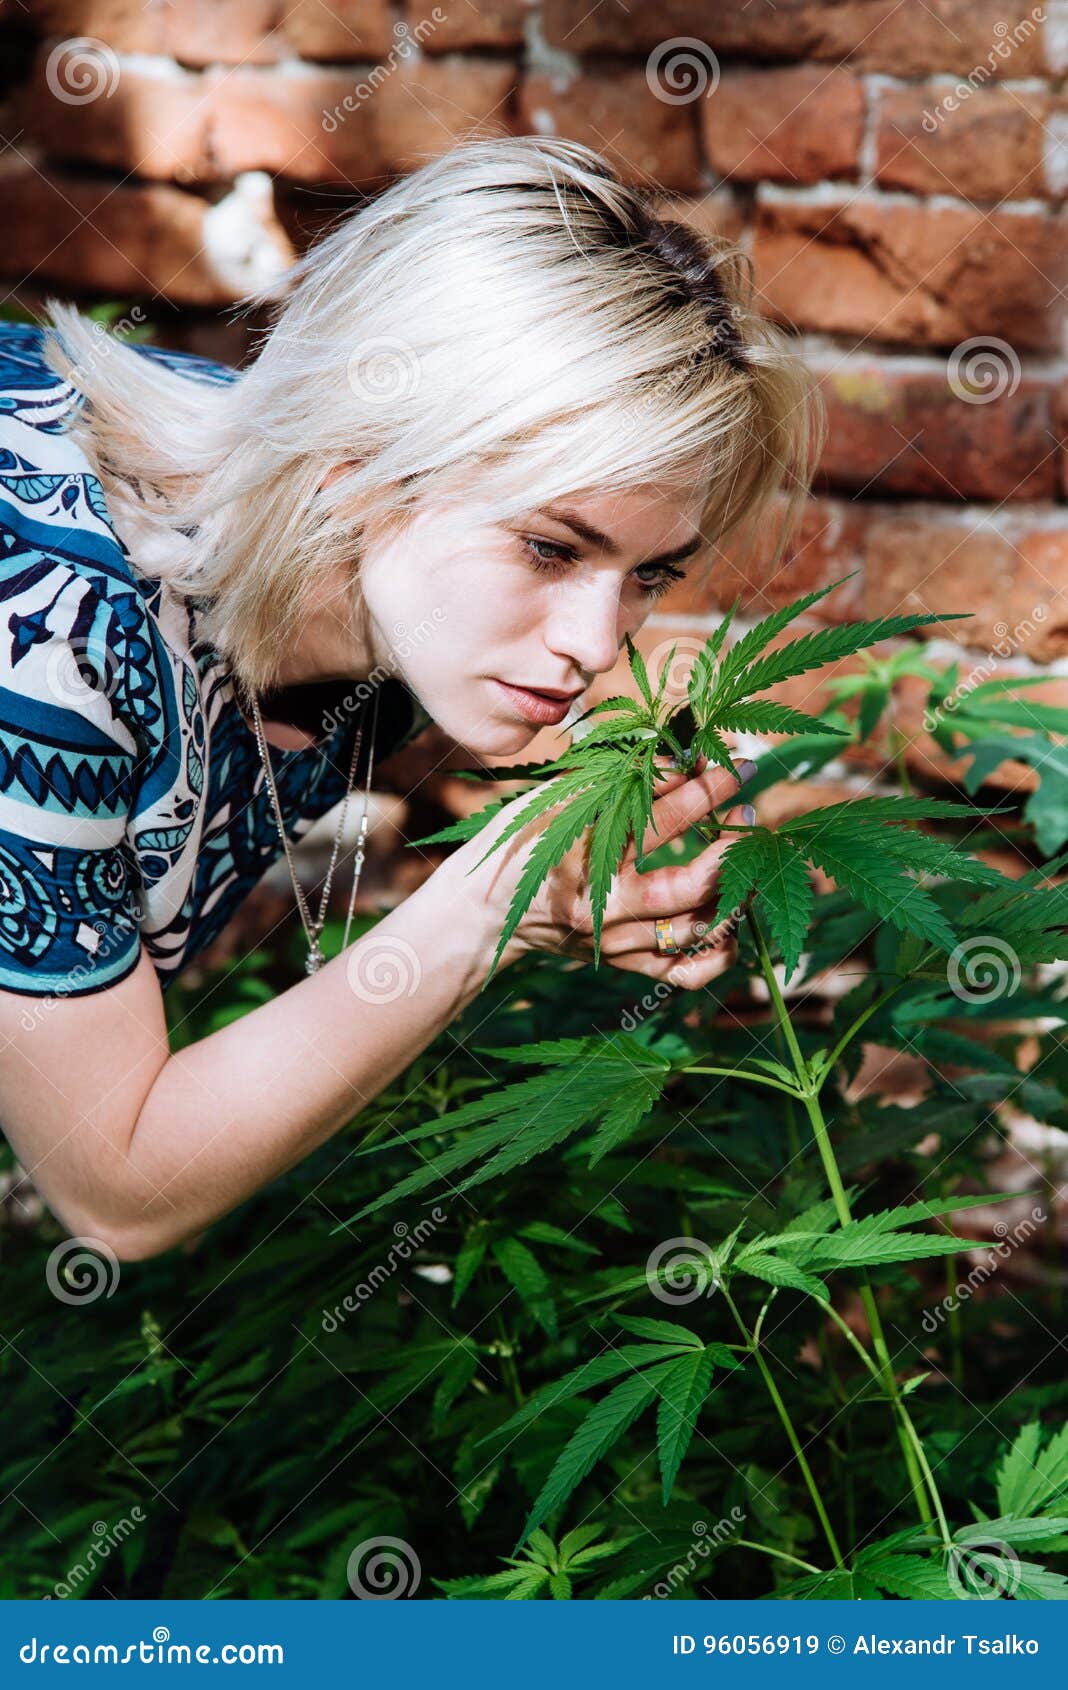 Конопля девушка фото семена конопли из челябинска